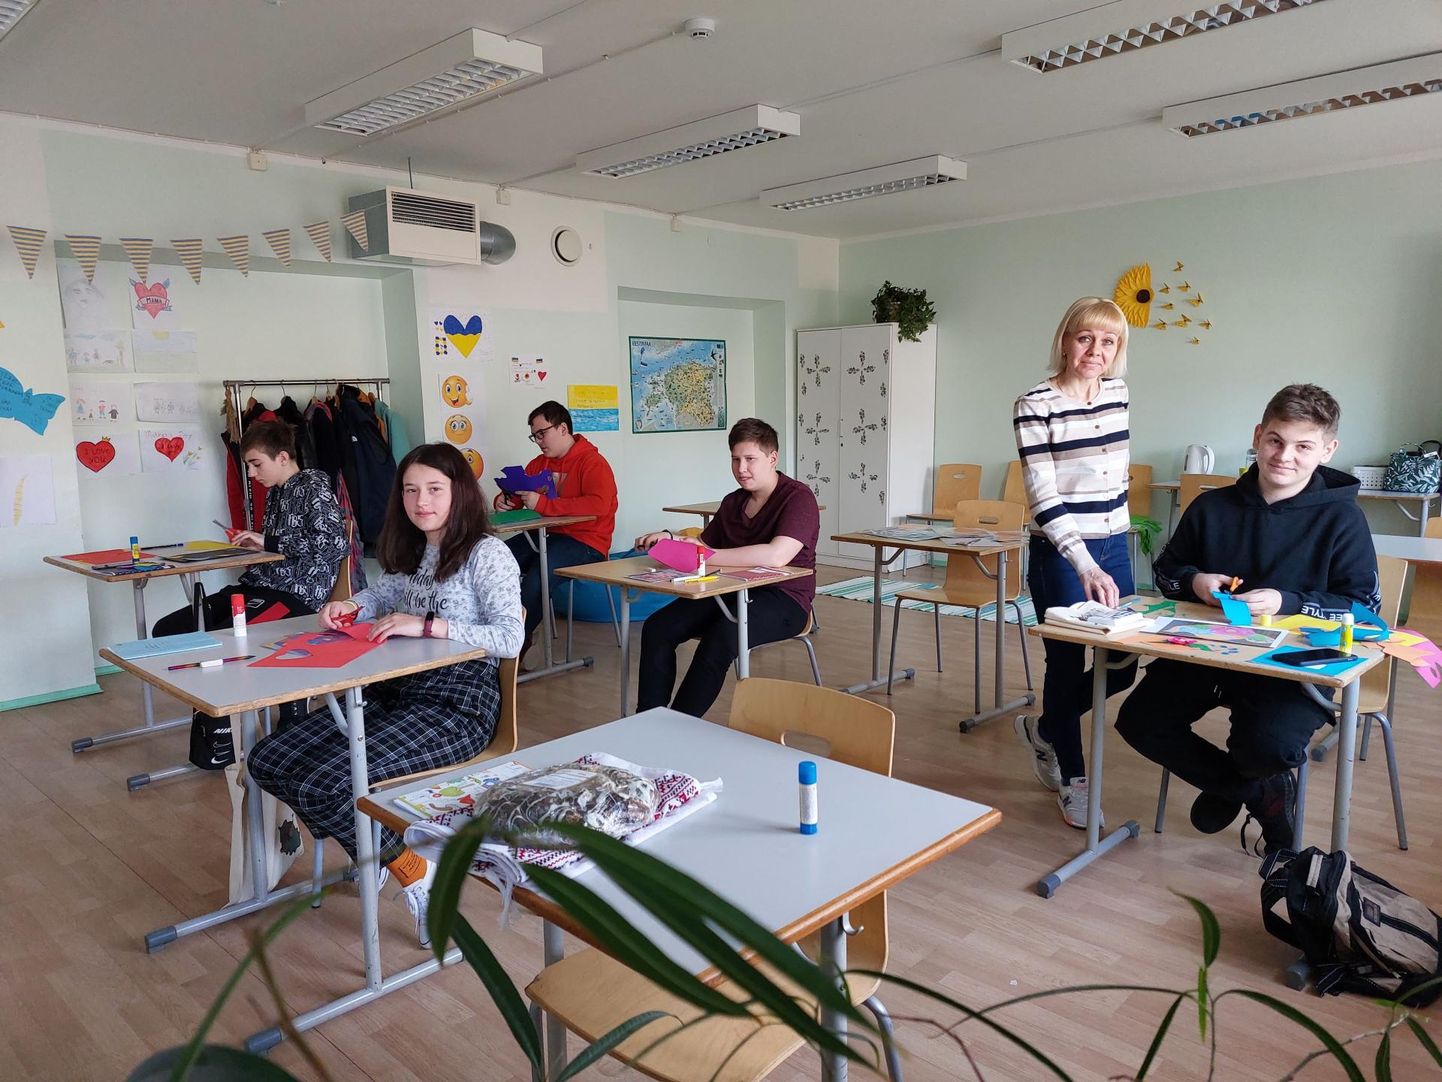 Õpetaja Olena õpetab lapsi Ukraina õppeprogrammi järgi. Lisaks õpitakse eesti keelt.